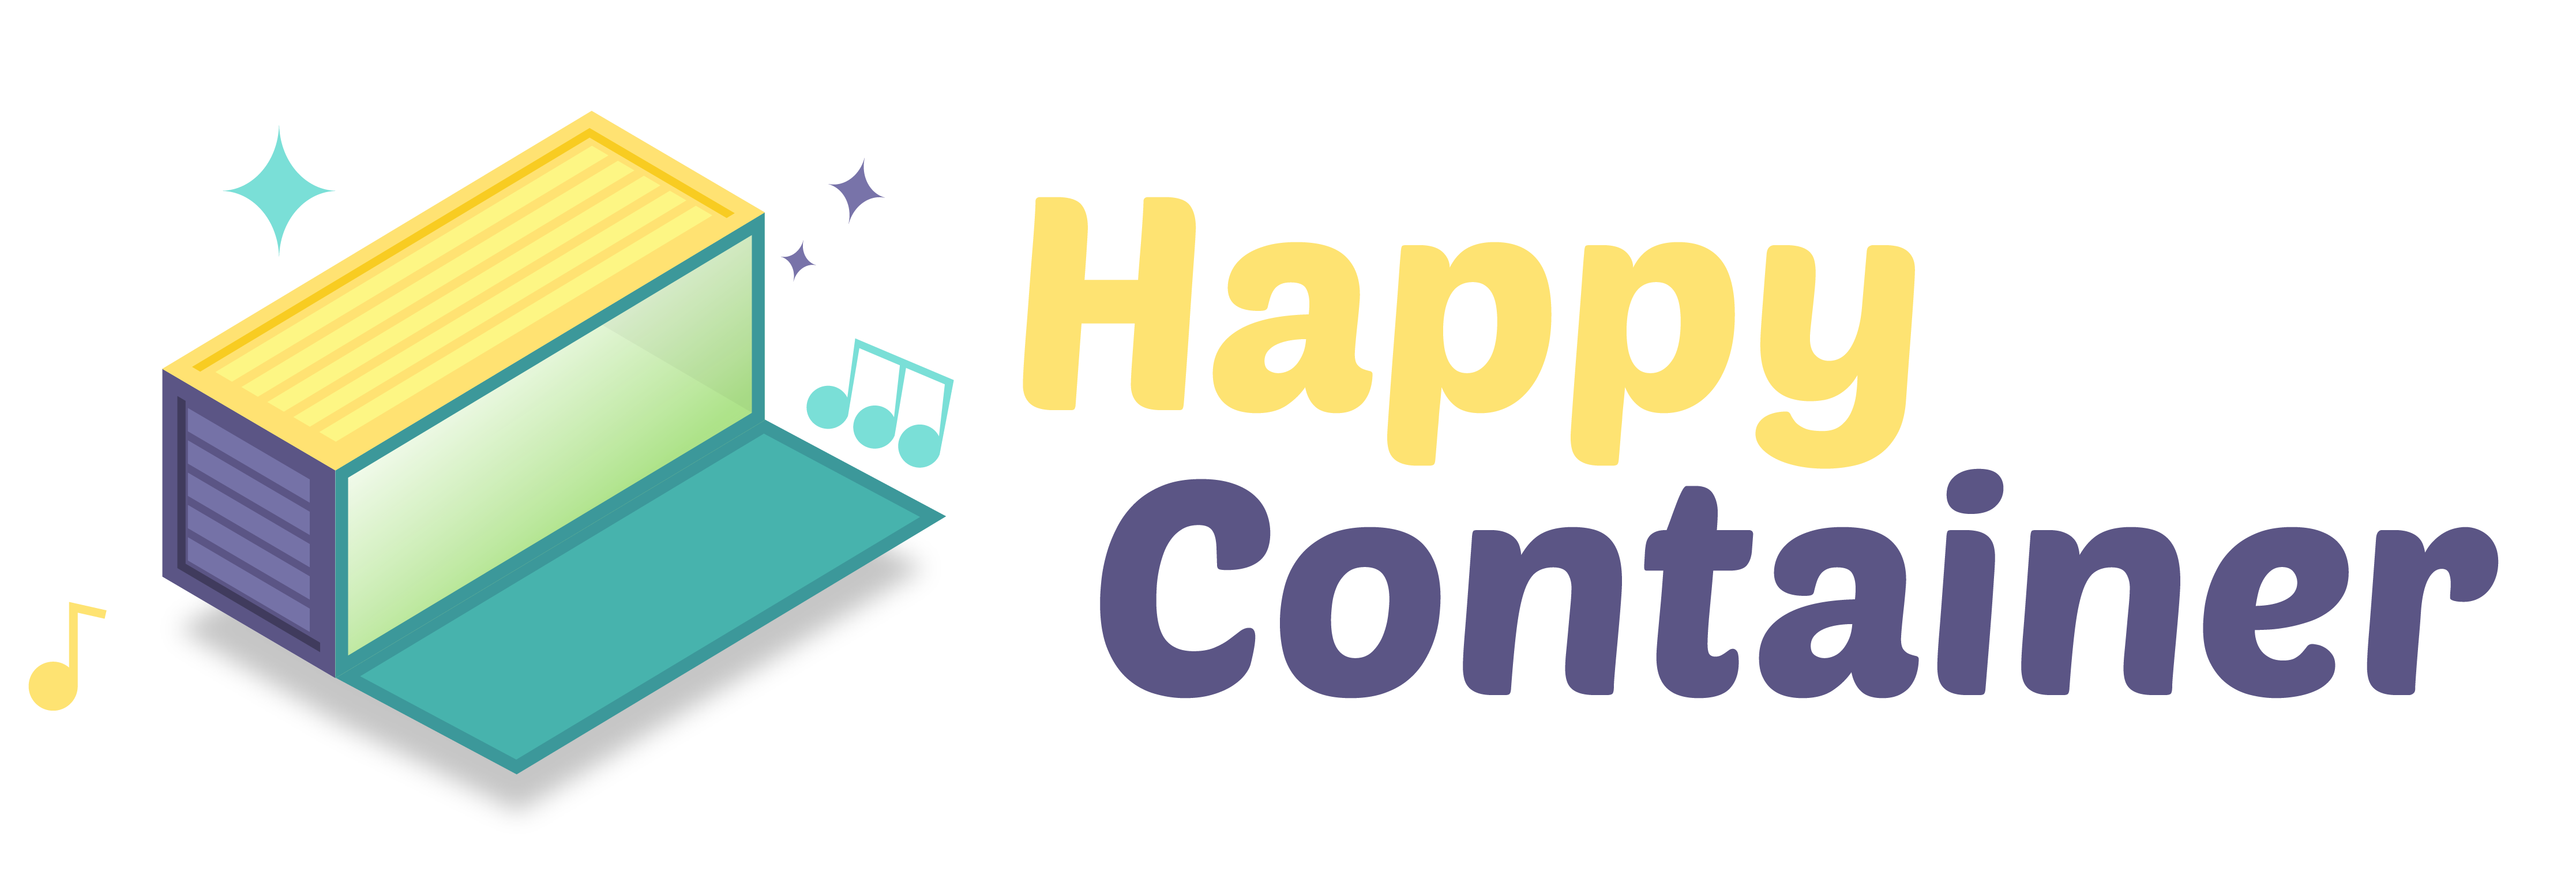 Happy Container logo